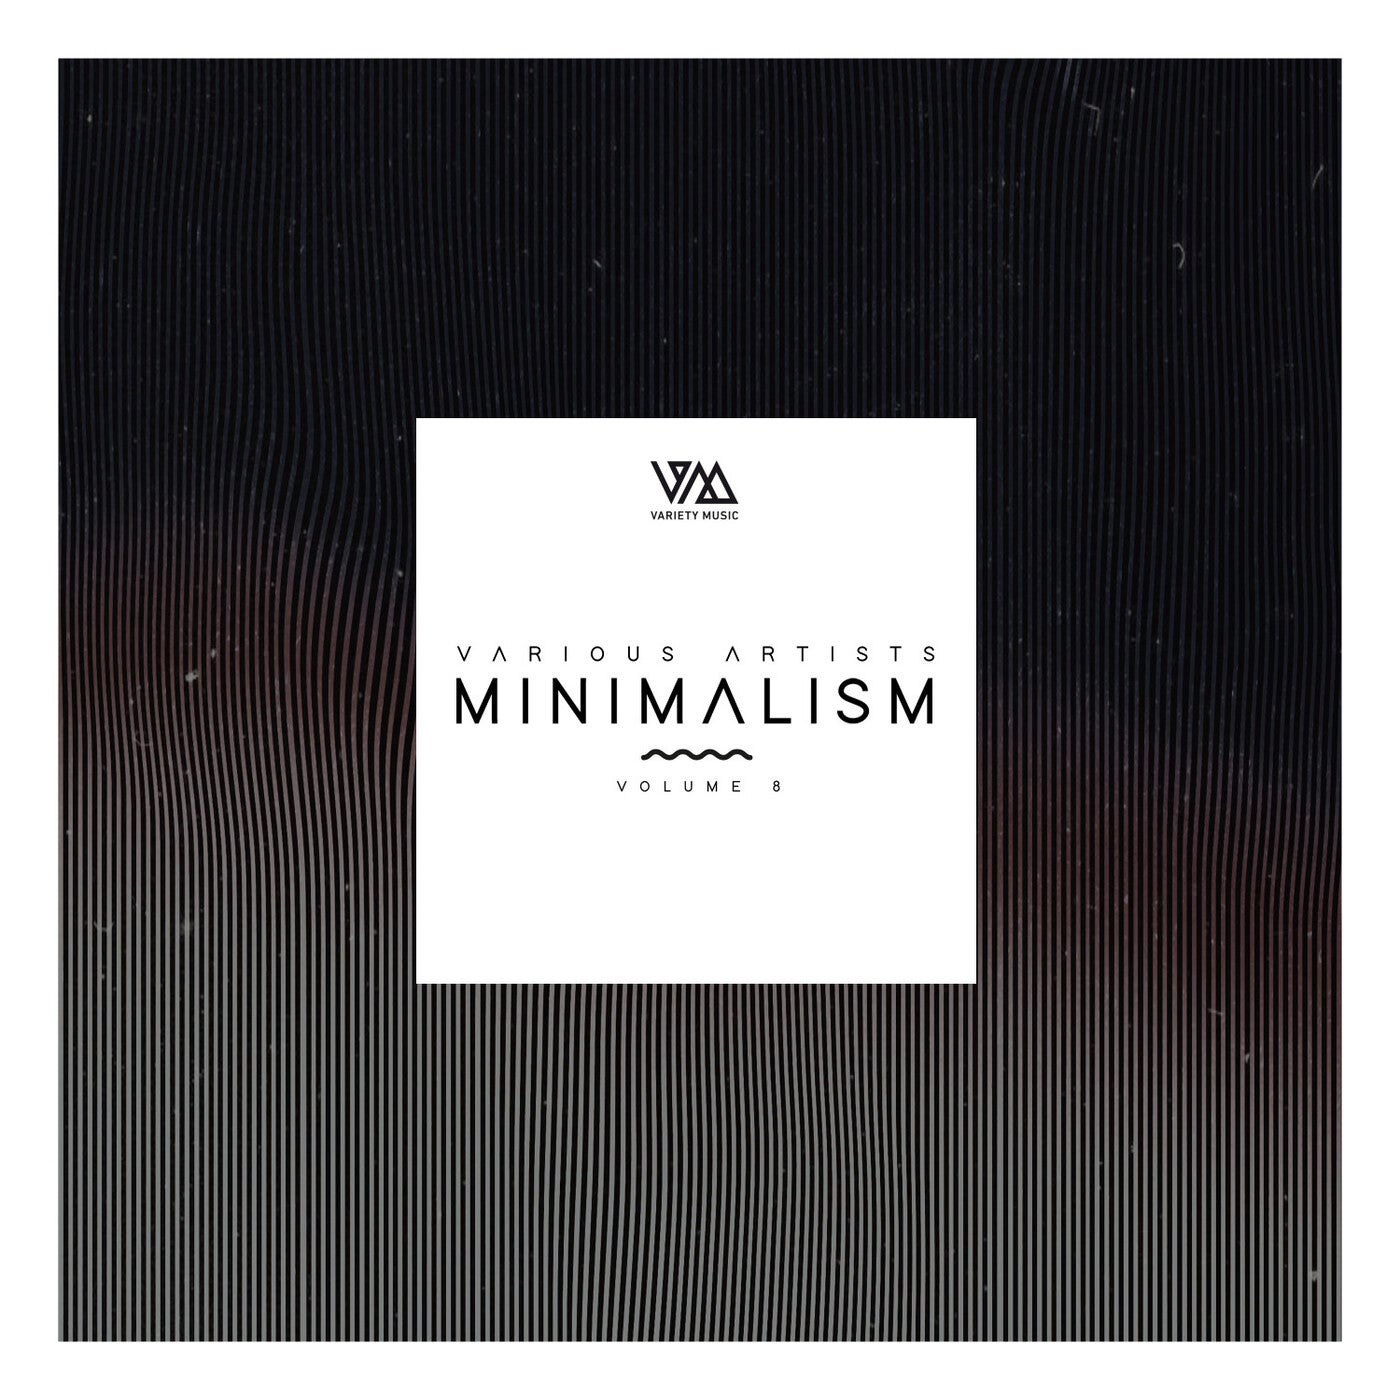 Minimalism Vol. 8